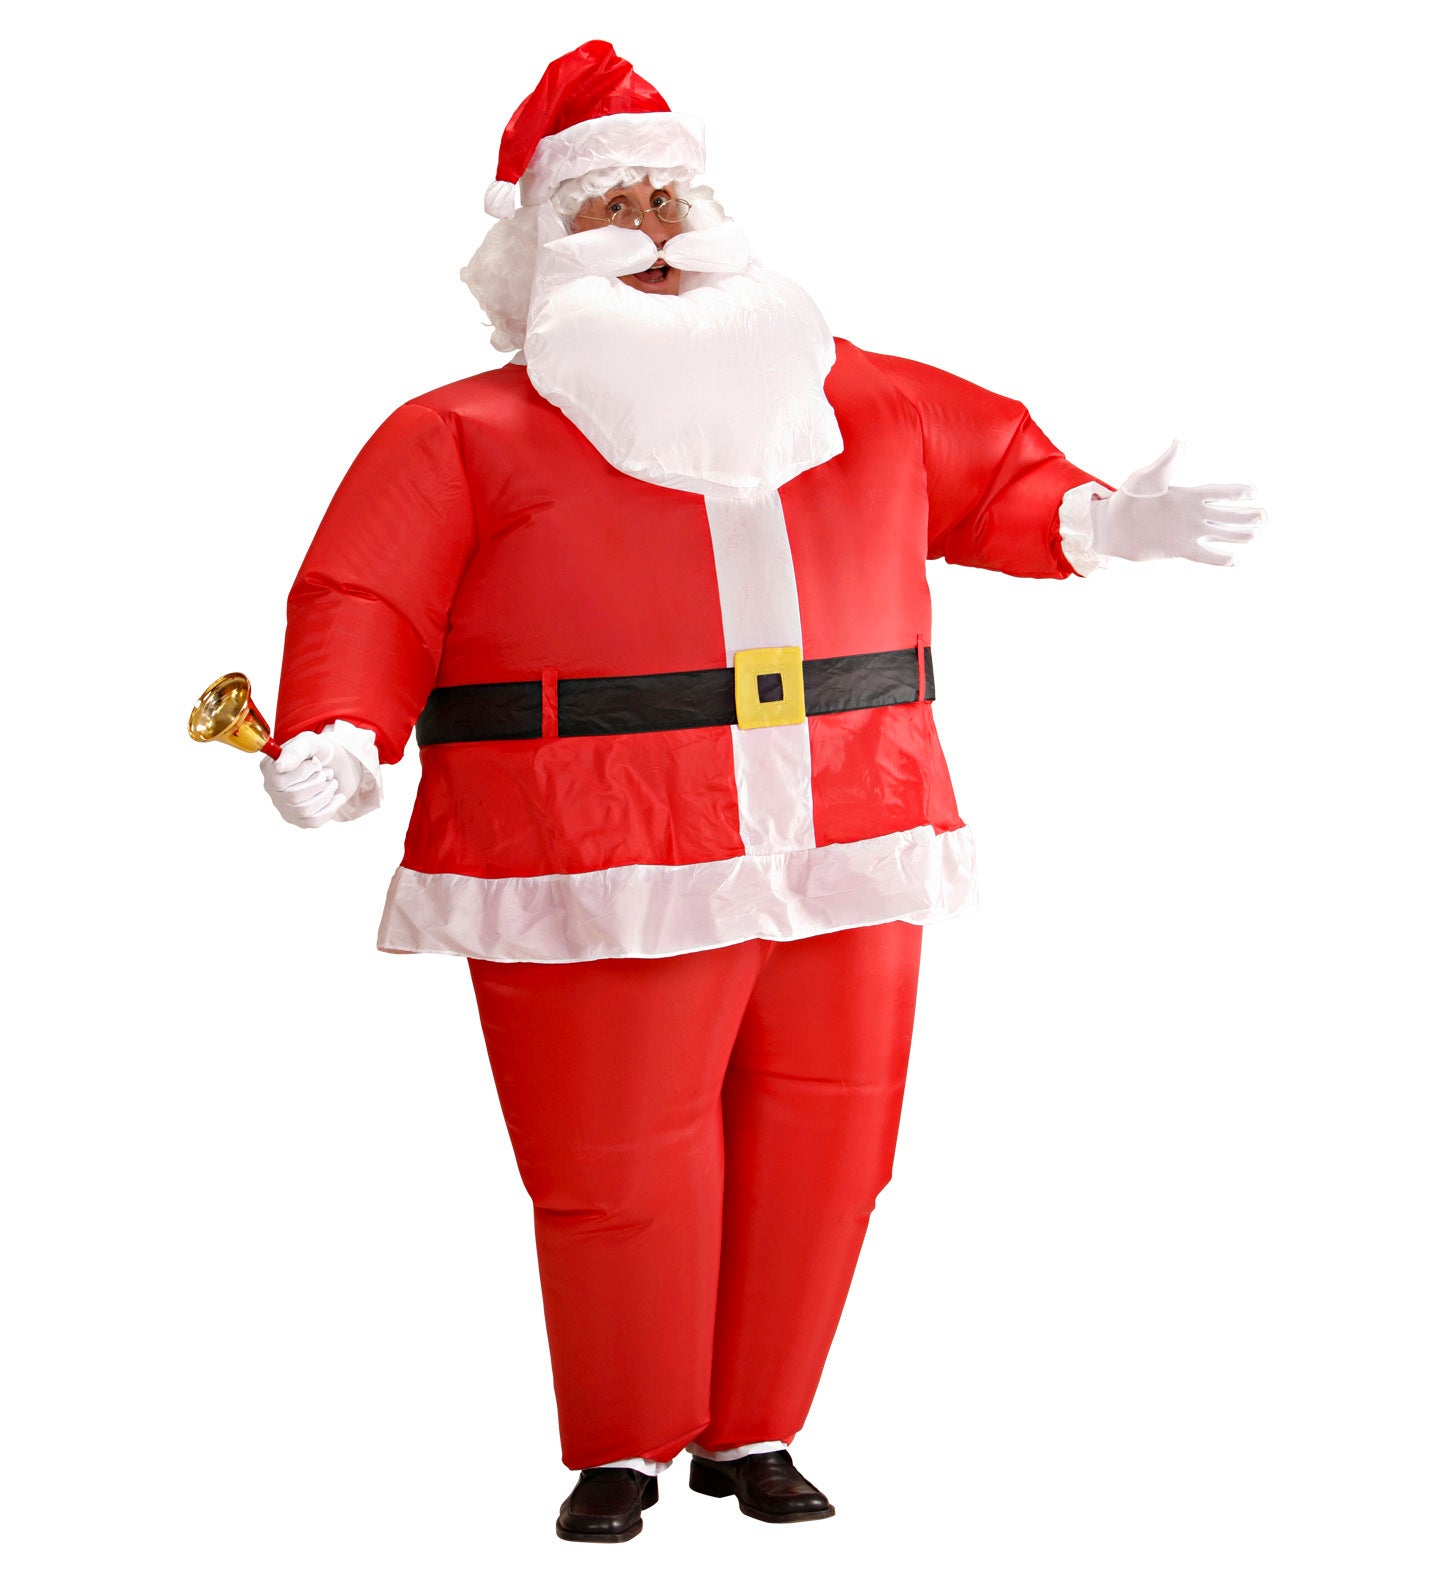 Inflatable Santa claus Costume